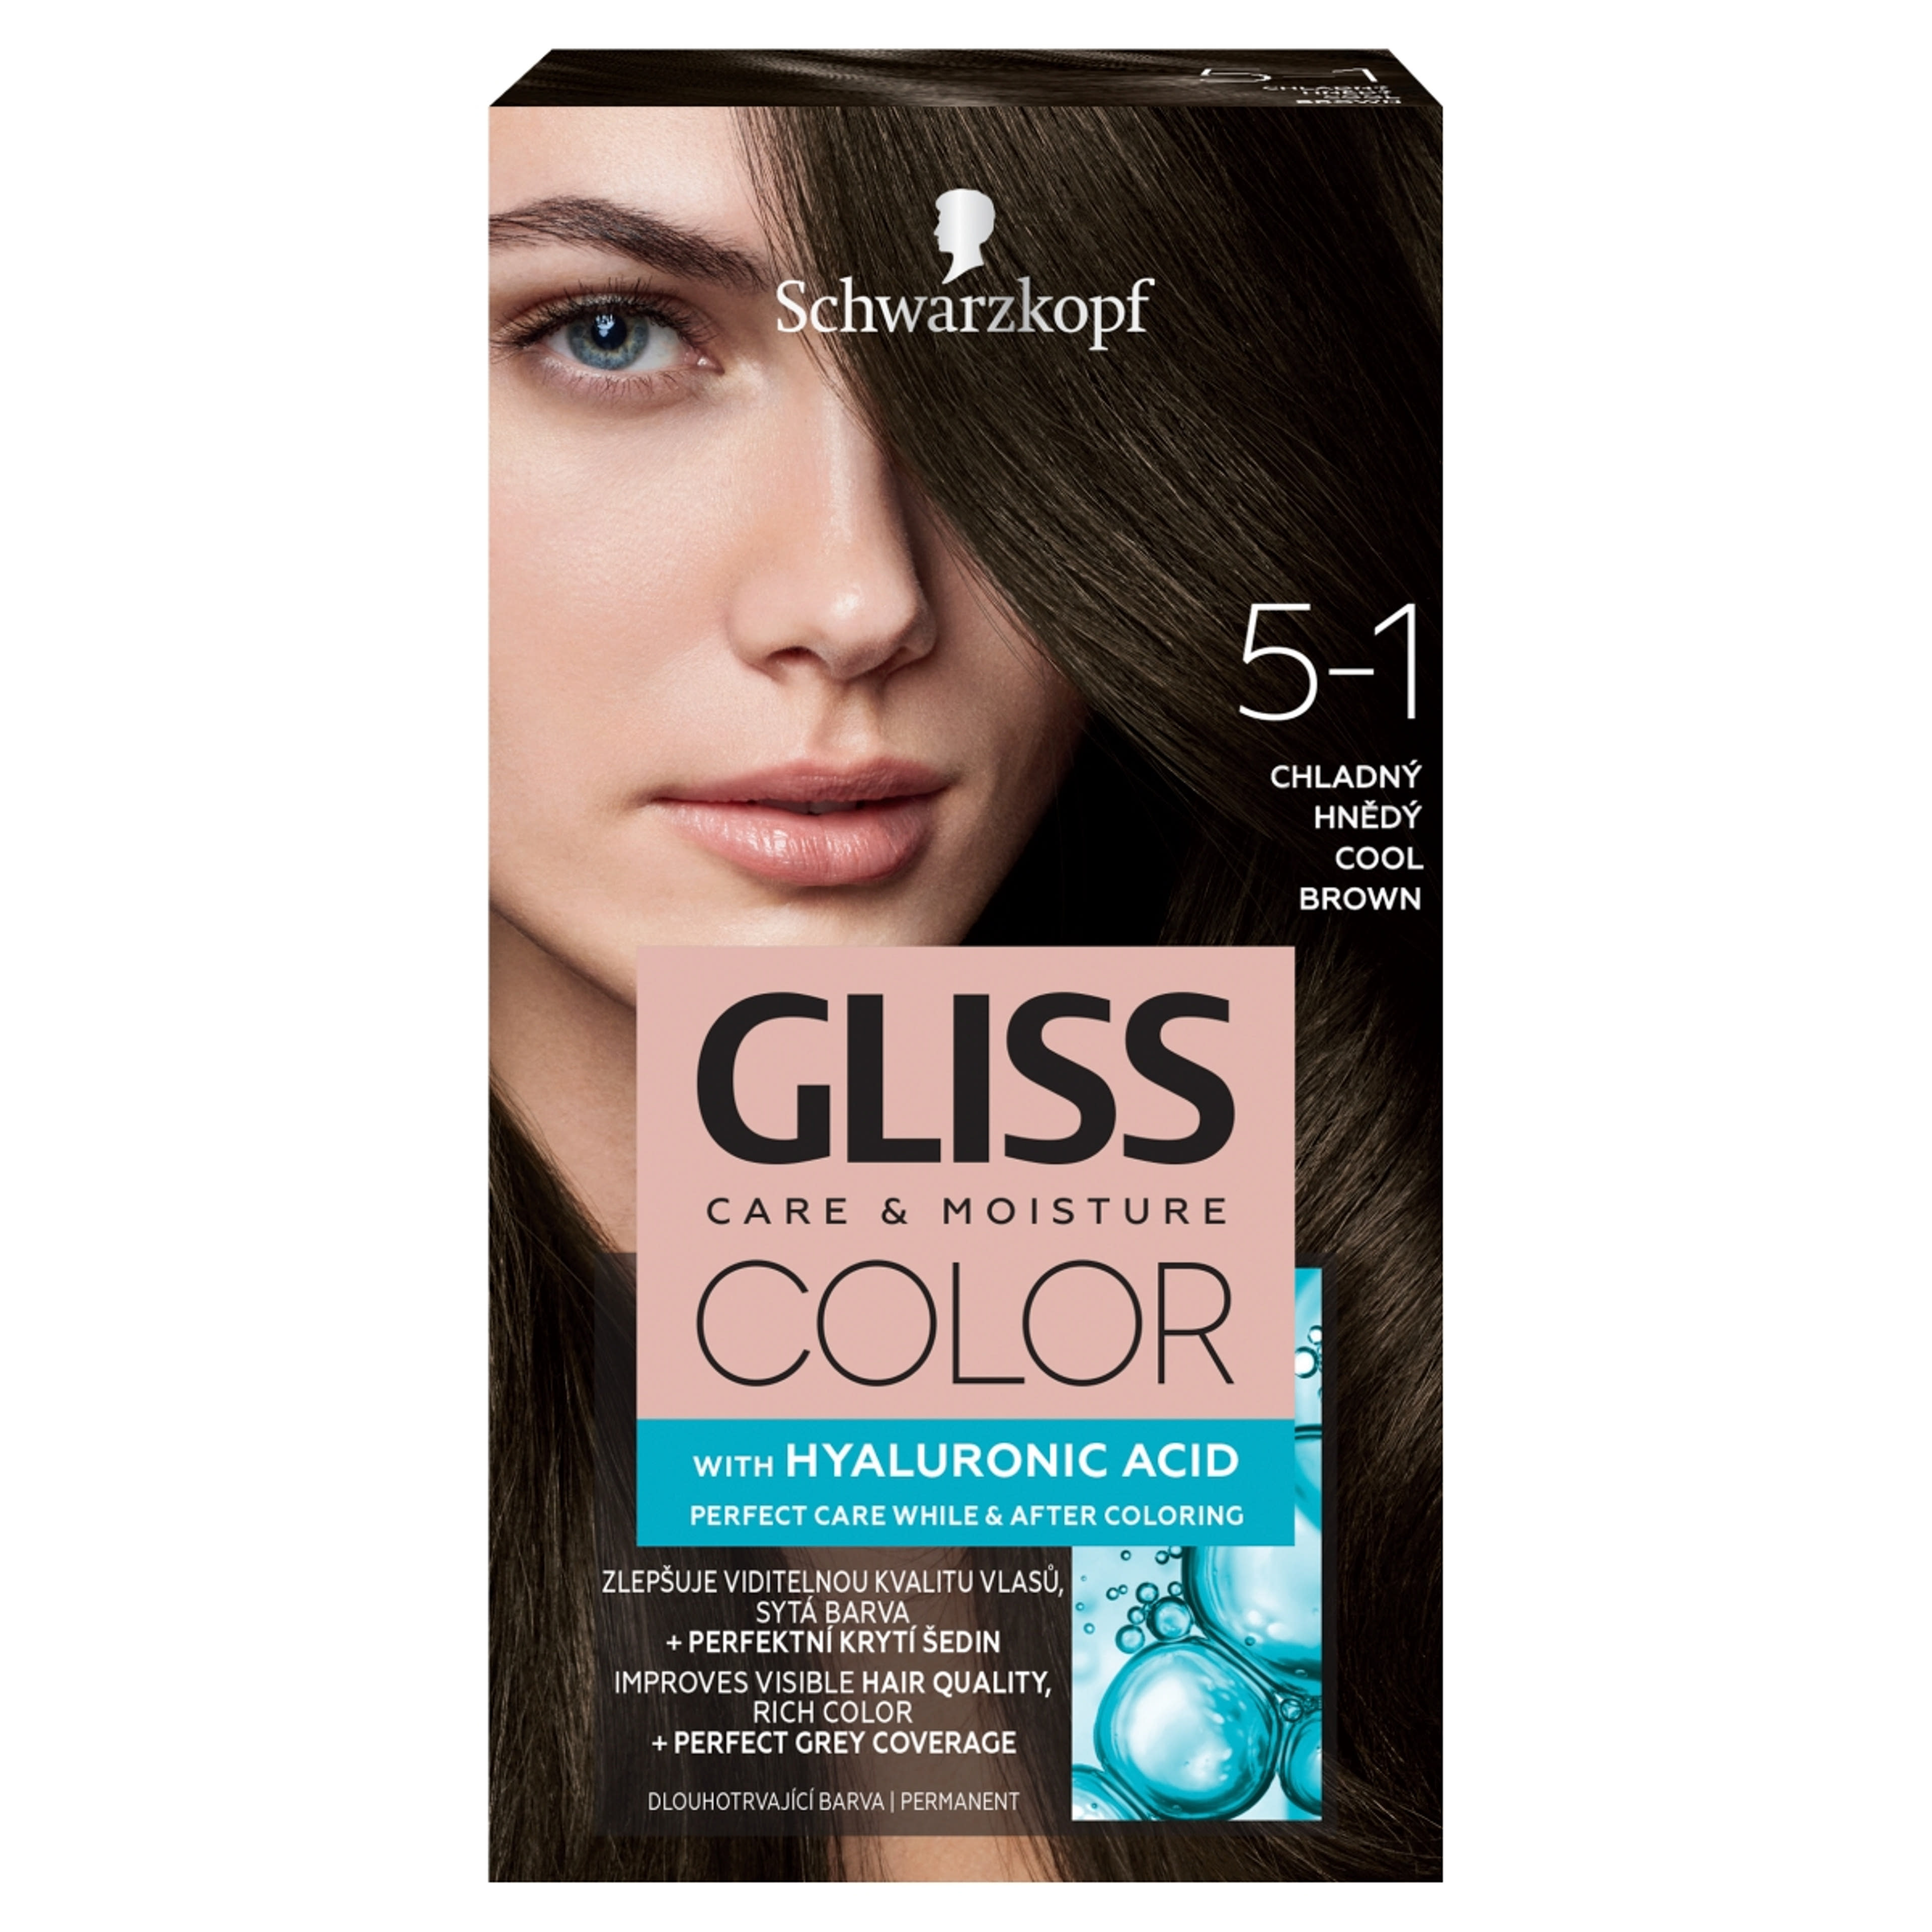 Gliss Color tartós hajfesték 5-1 Hűvösbarna - 1 db-1